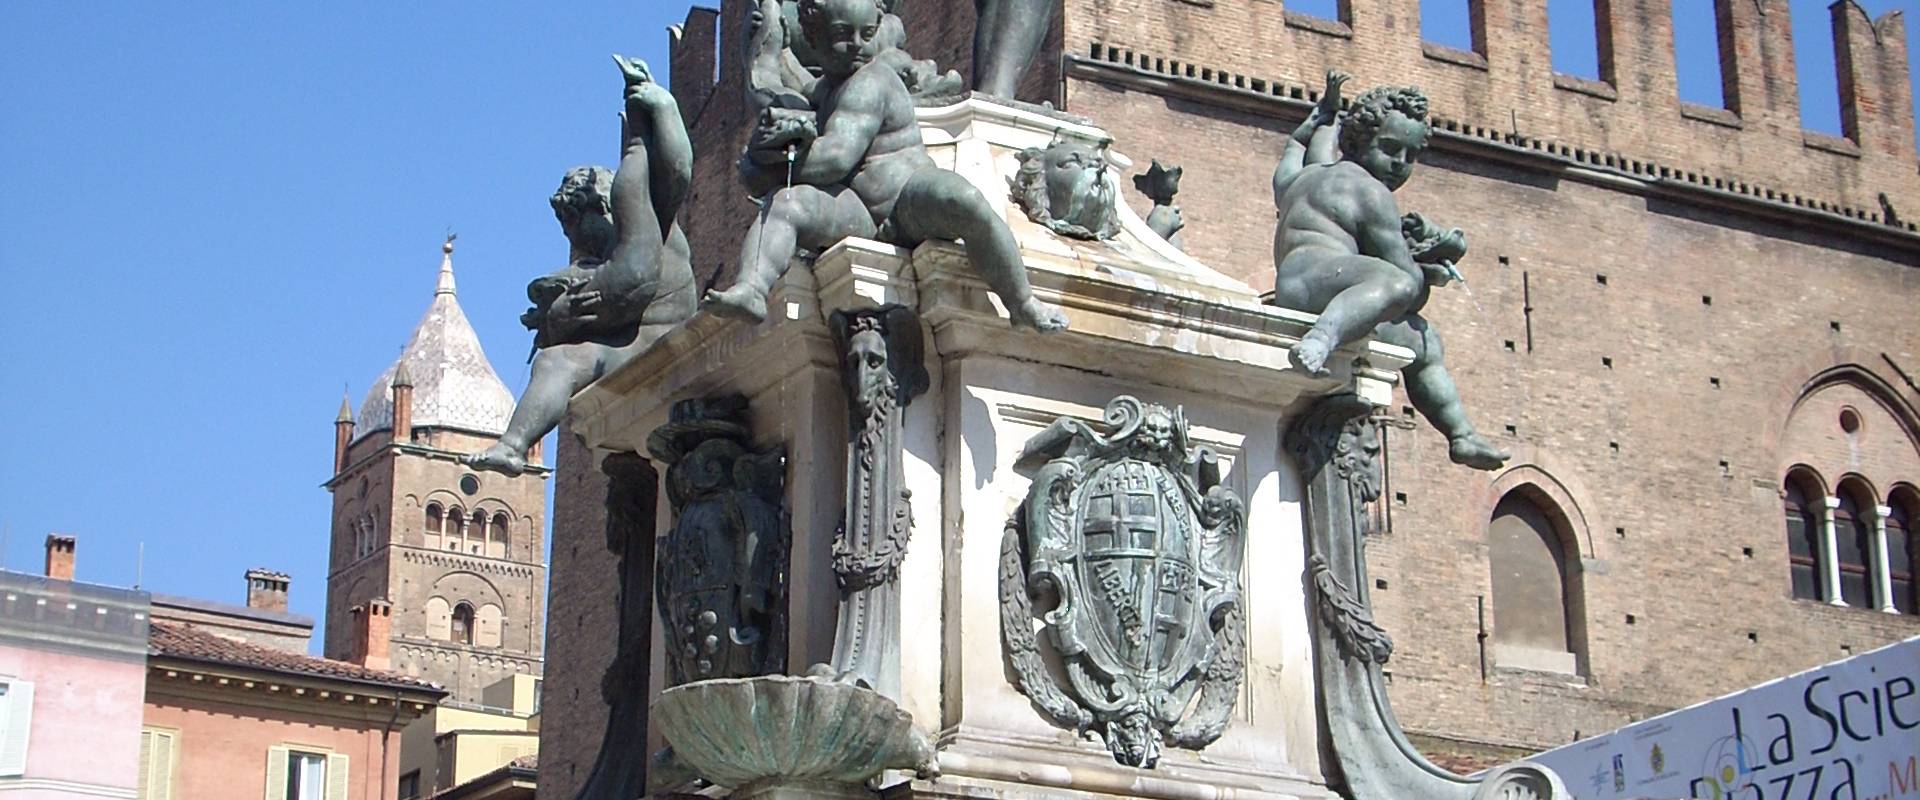 Fontana del Nettuno in alto foto di PacoPetrus